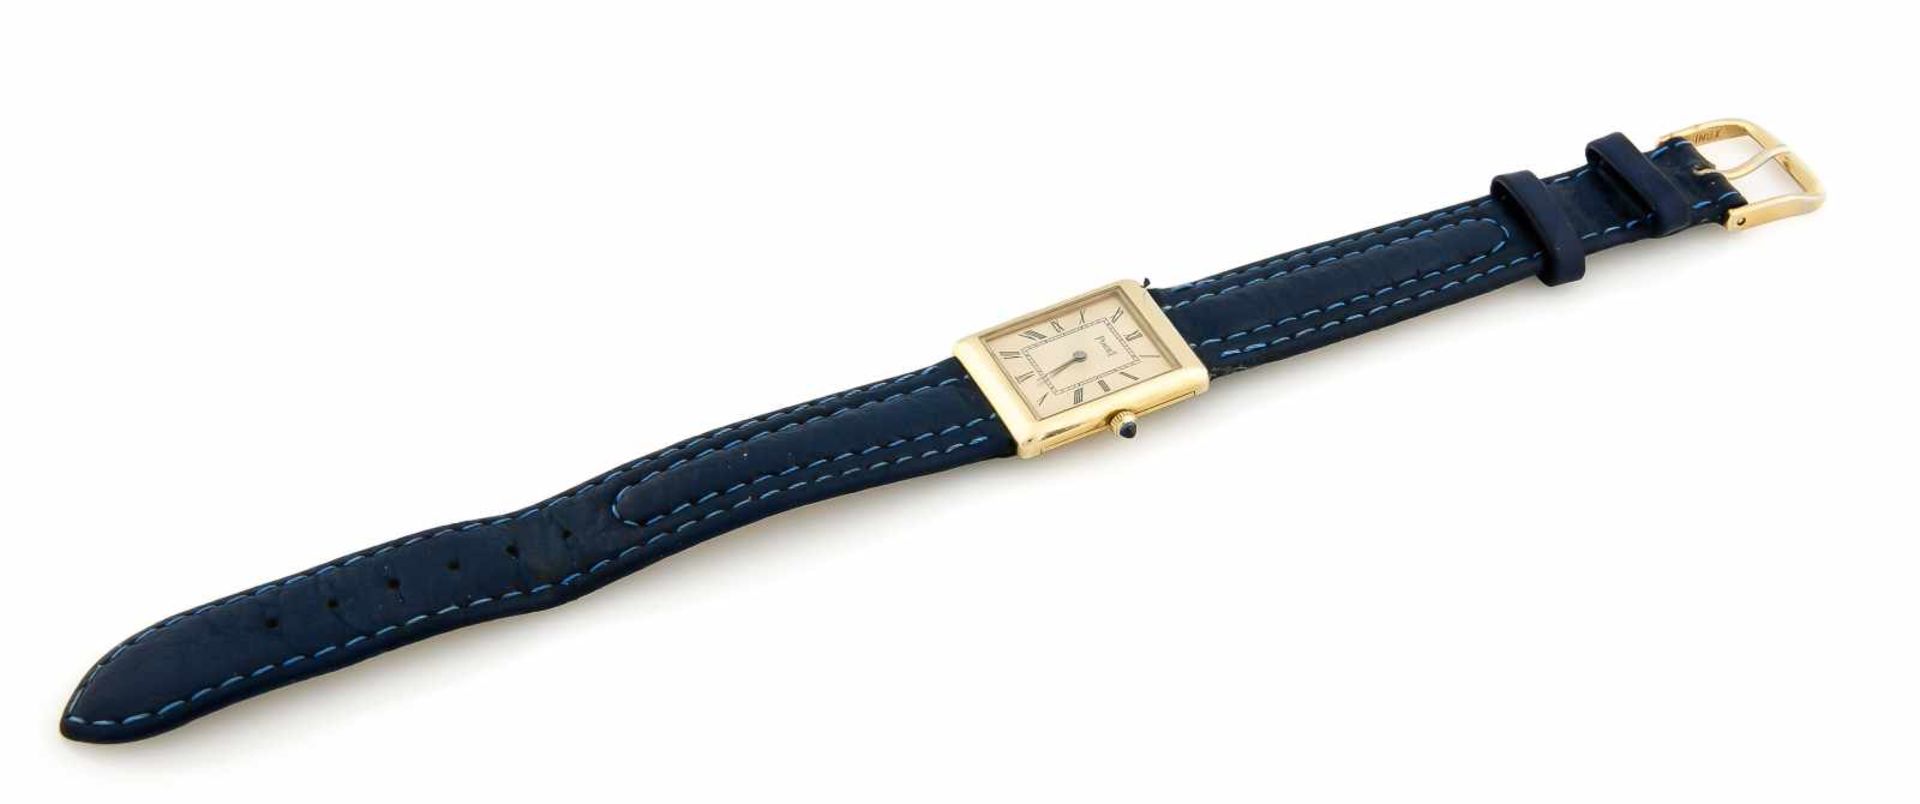 Damenuhr Piaget Handaufzug, 750 Gehäuse mit blauem Lederband, Uhrwerk läuft, Gehäuse20x26mm, - Bild 3 aus 3